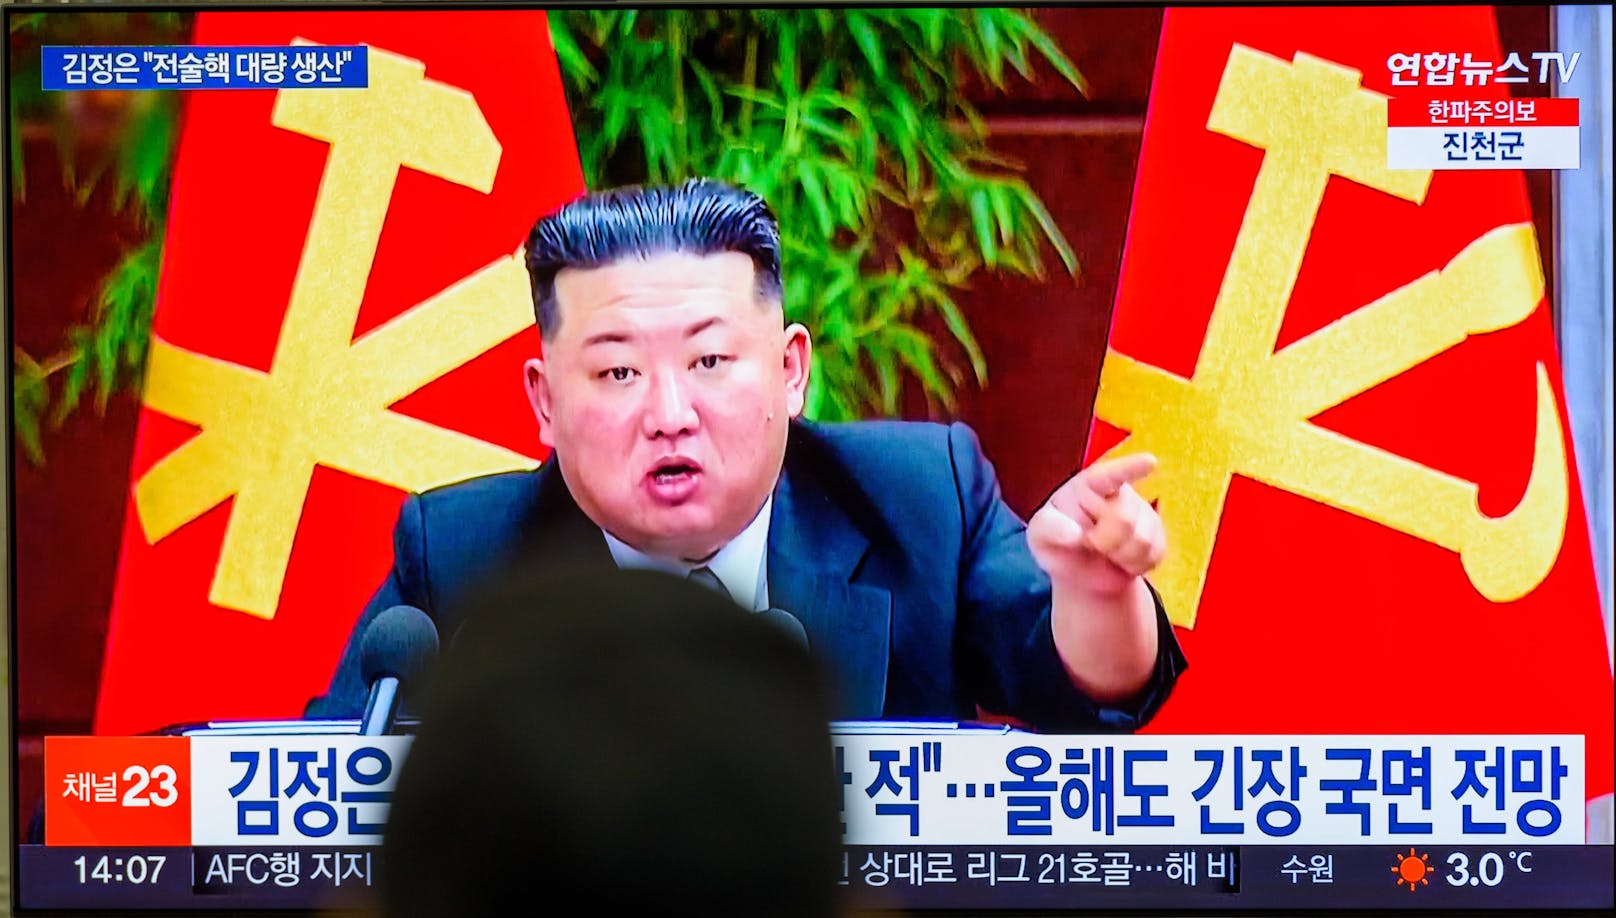 Die Gewässer rund um die koreanische Halbinsel seien "mit der Gefahr eines Nuklearkriegs" instabiler geworden, was auf Feindseligkeiten unter Federführung der USA zurückzuführen sei, sagte Kim.